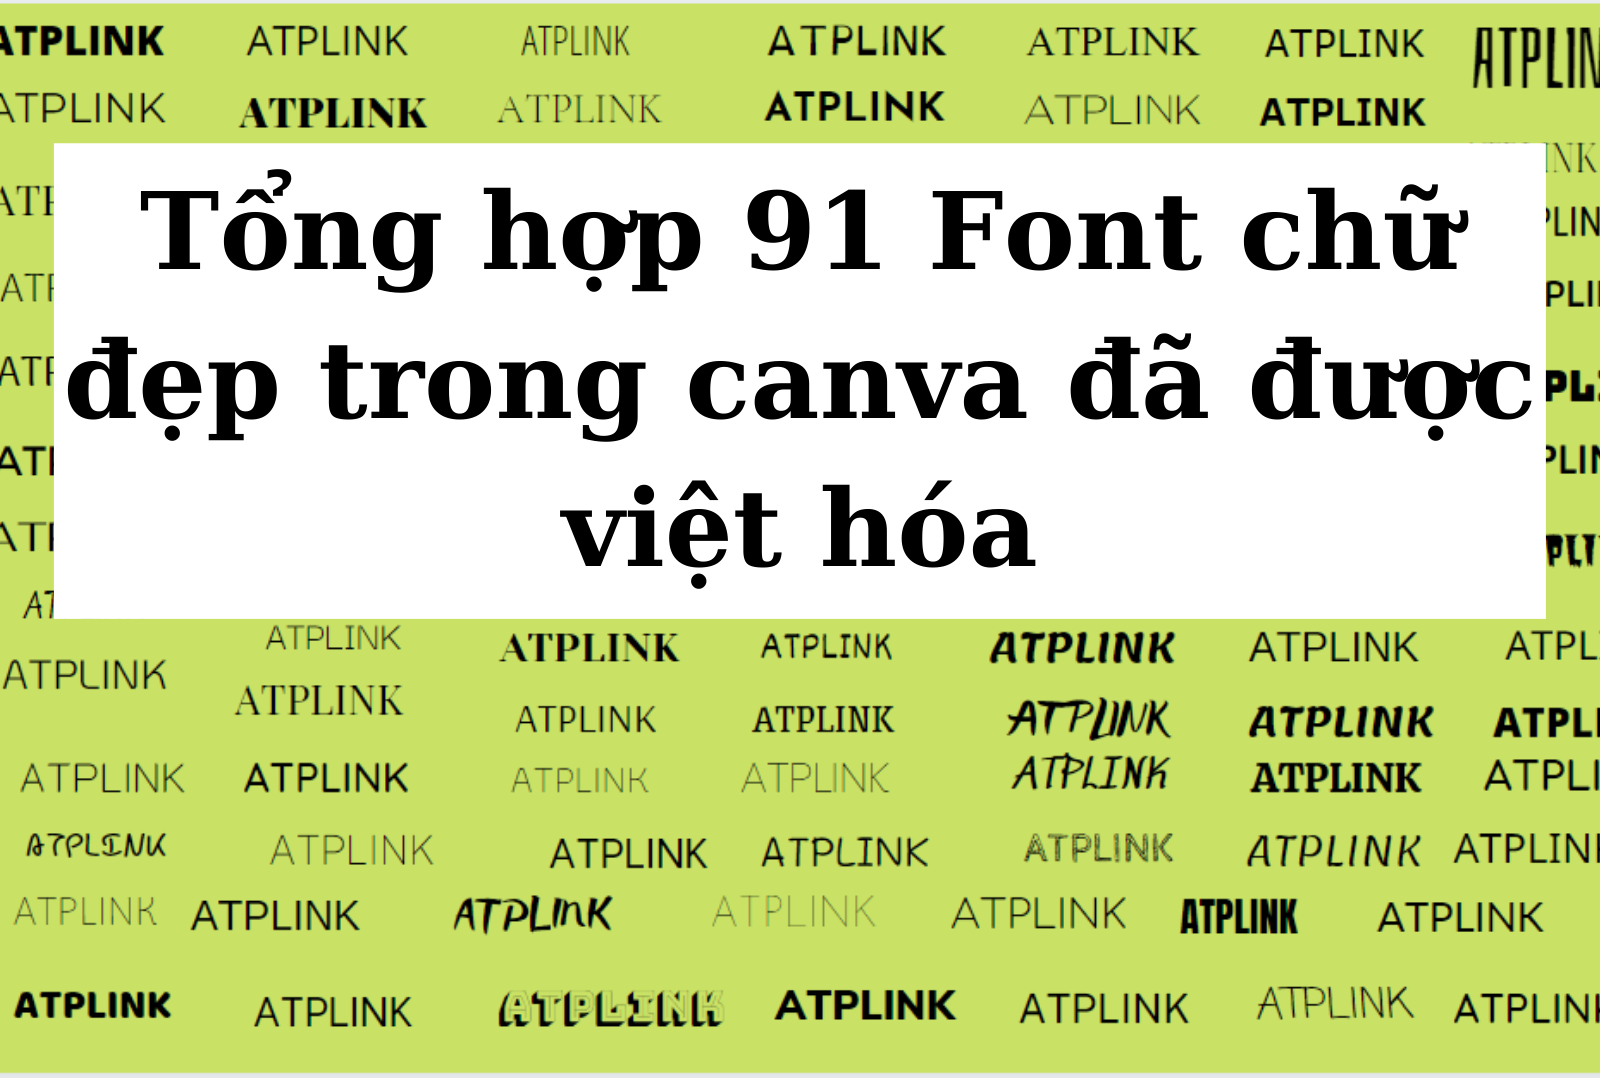 Font chữ tiếng Việt trong Canva sẽ giúp cho bạn tạo ra những thiết kế đẹp mắt và chuyên nghiệp. Với nhiều font chữ đa dạng, Canva sẽ mang lại cho bạn sự đa dạng và sáng tạo cho thiết kế của bạn.